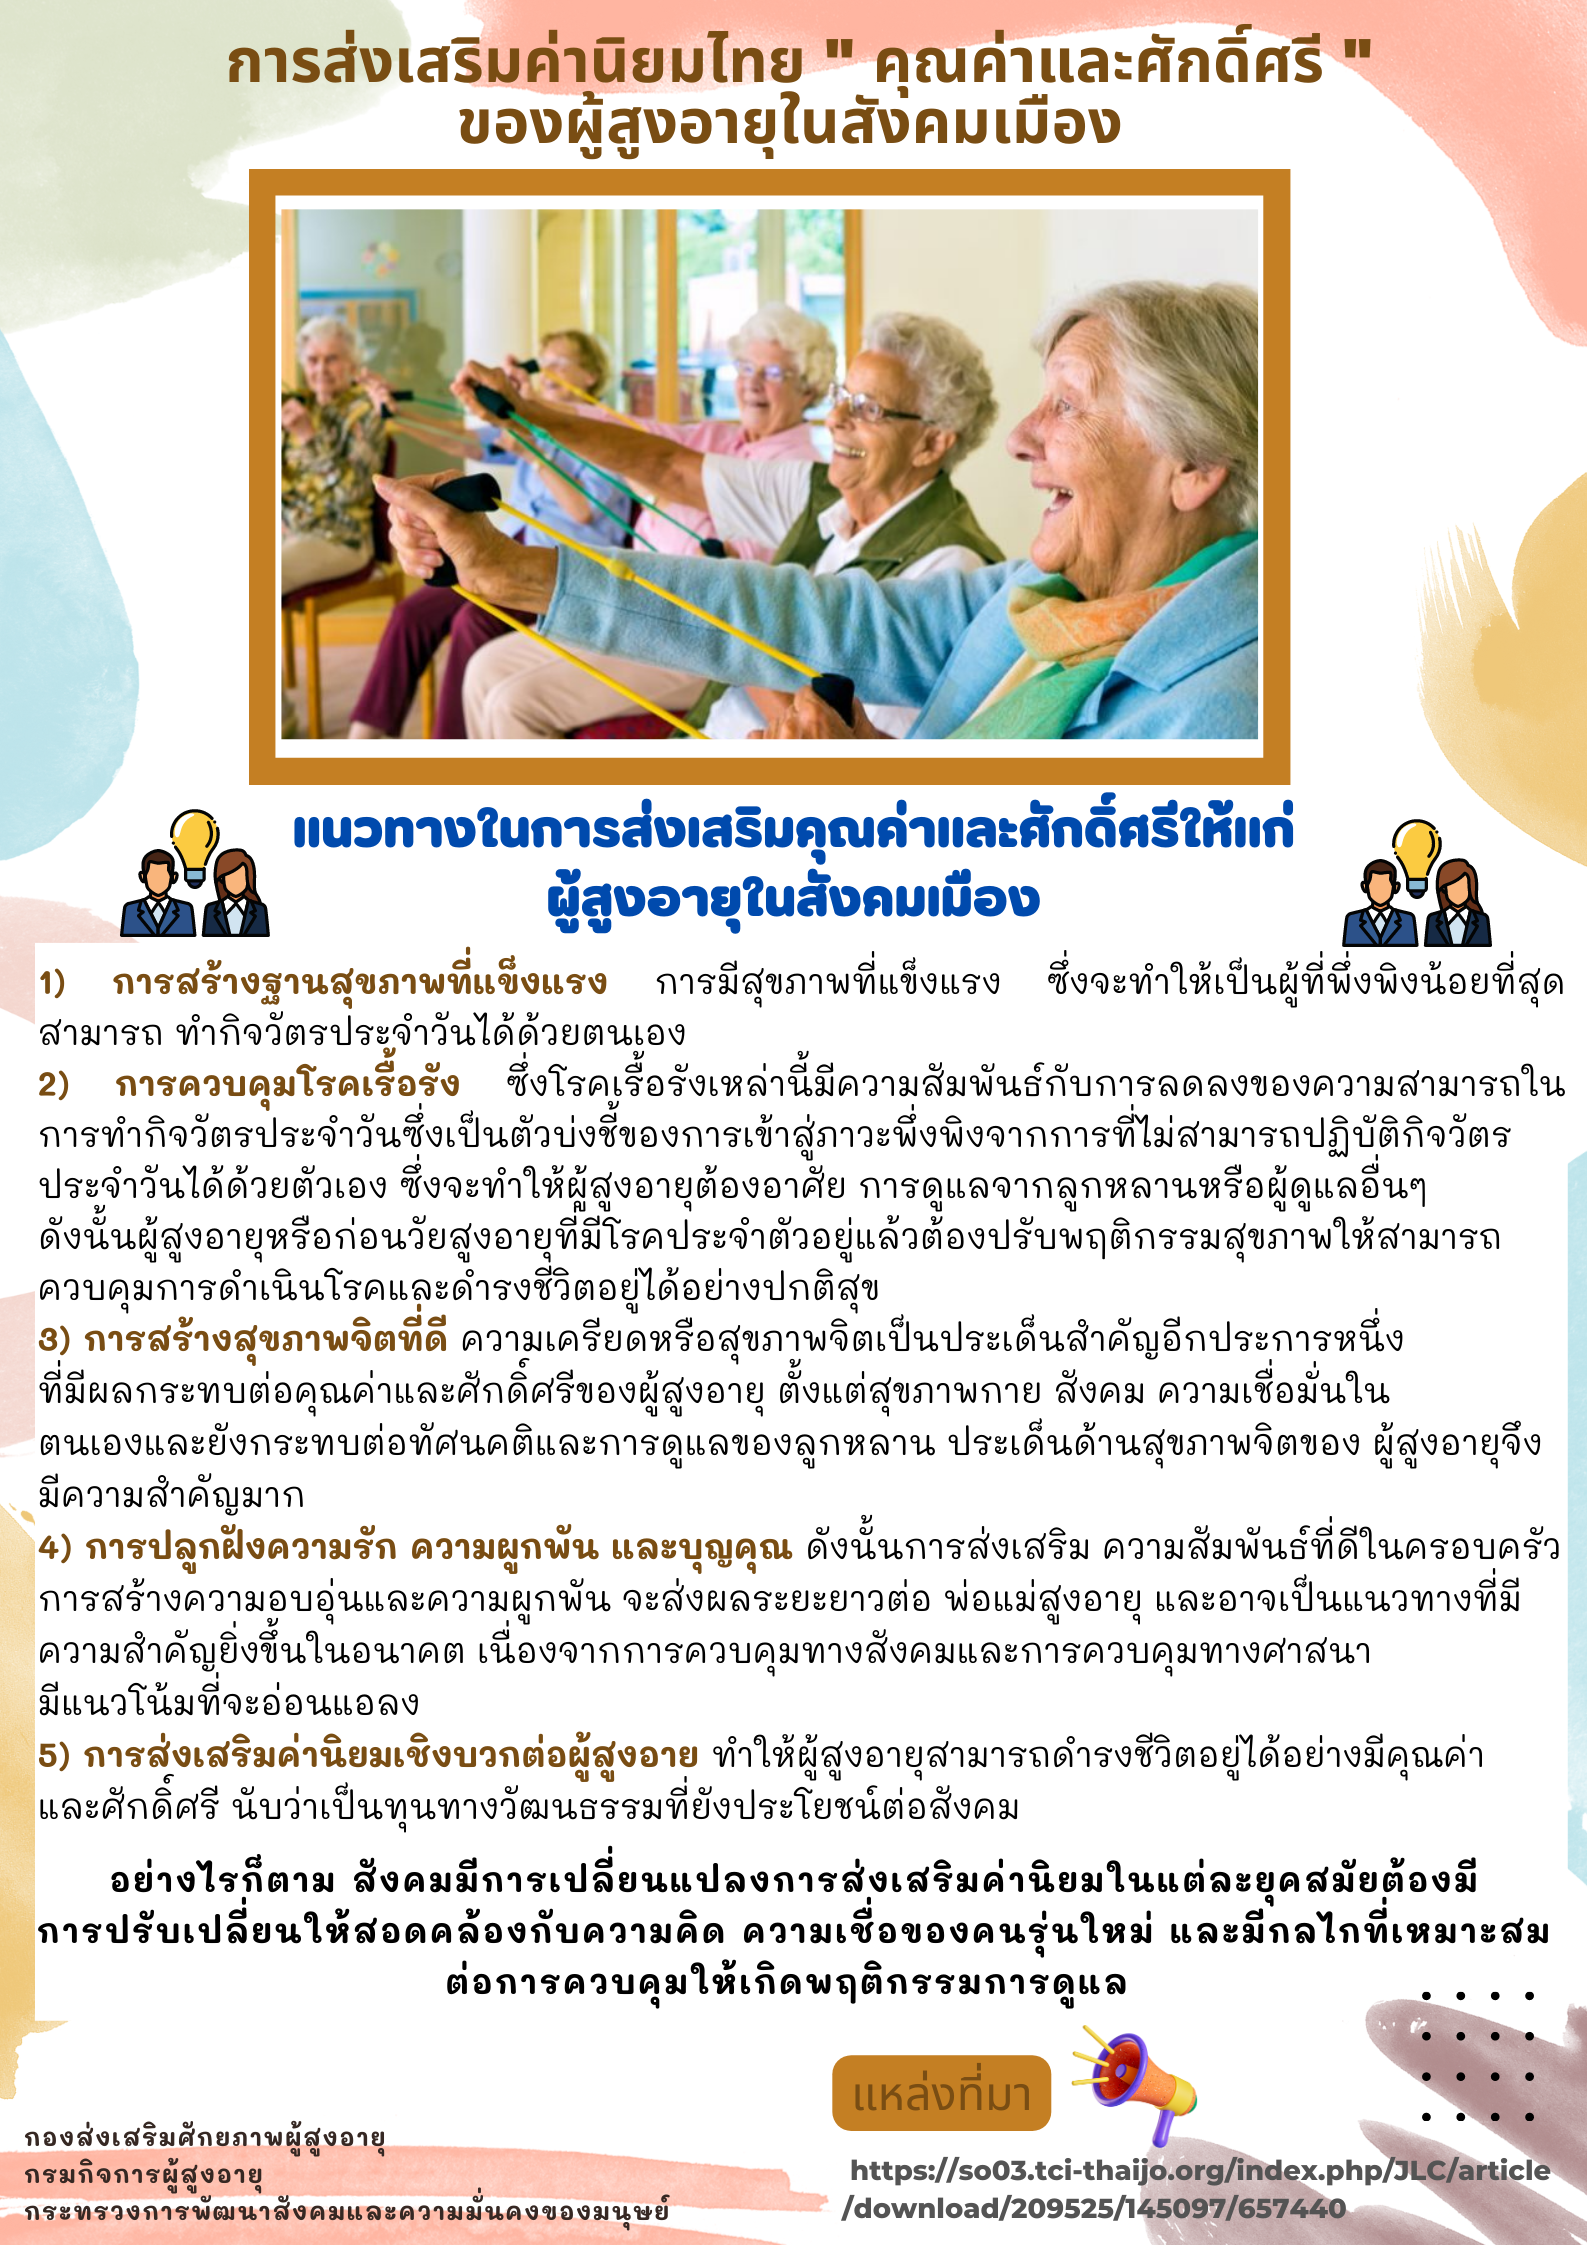 การส่งเสริมค่านิยมไทย  คุณค่าและศักดิ์ศรี  ของผู้สูงอายุในสังคมเมือง